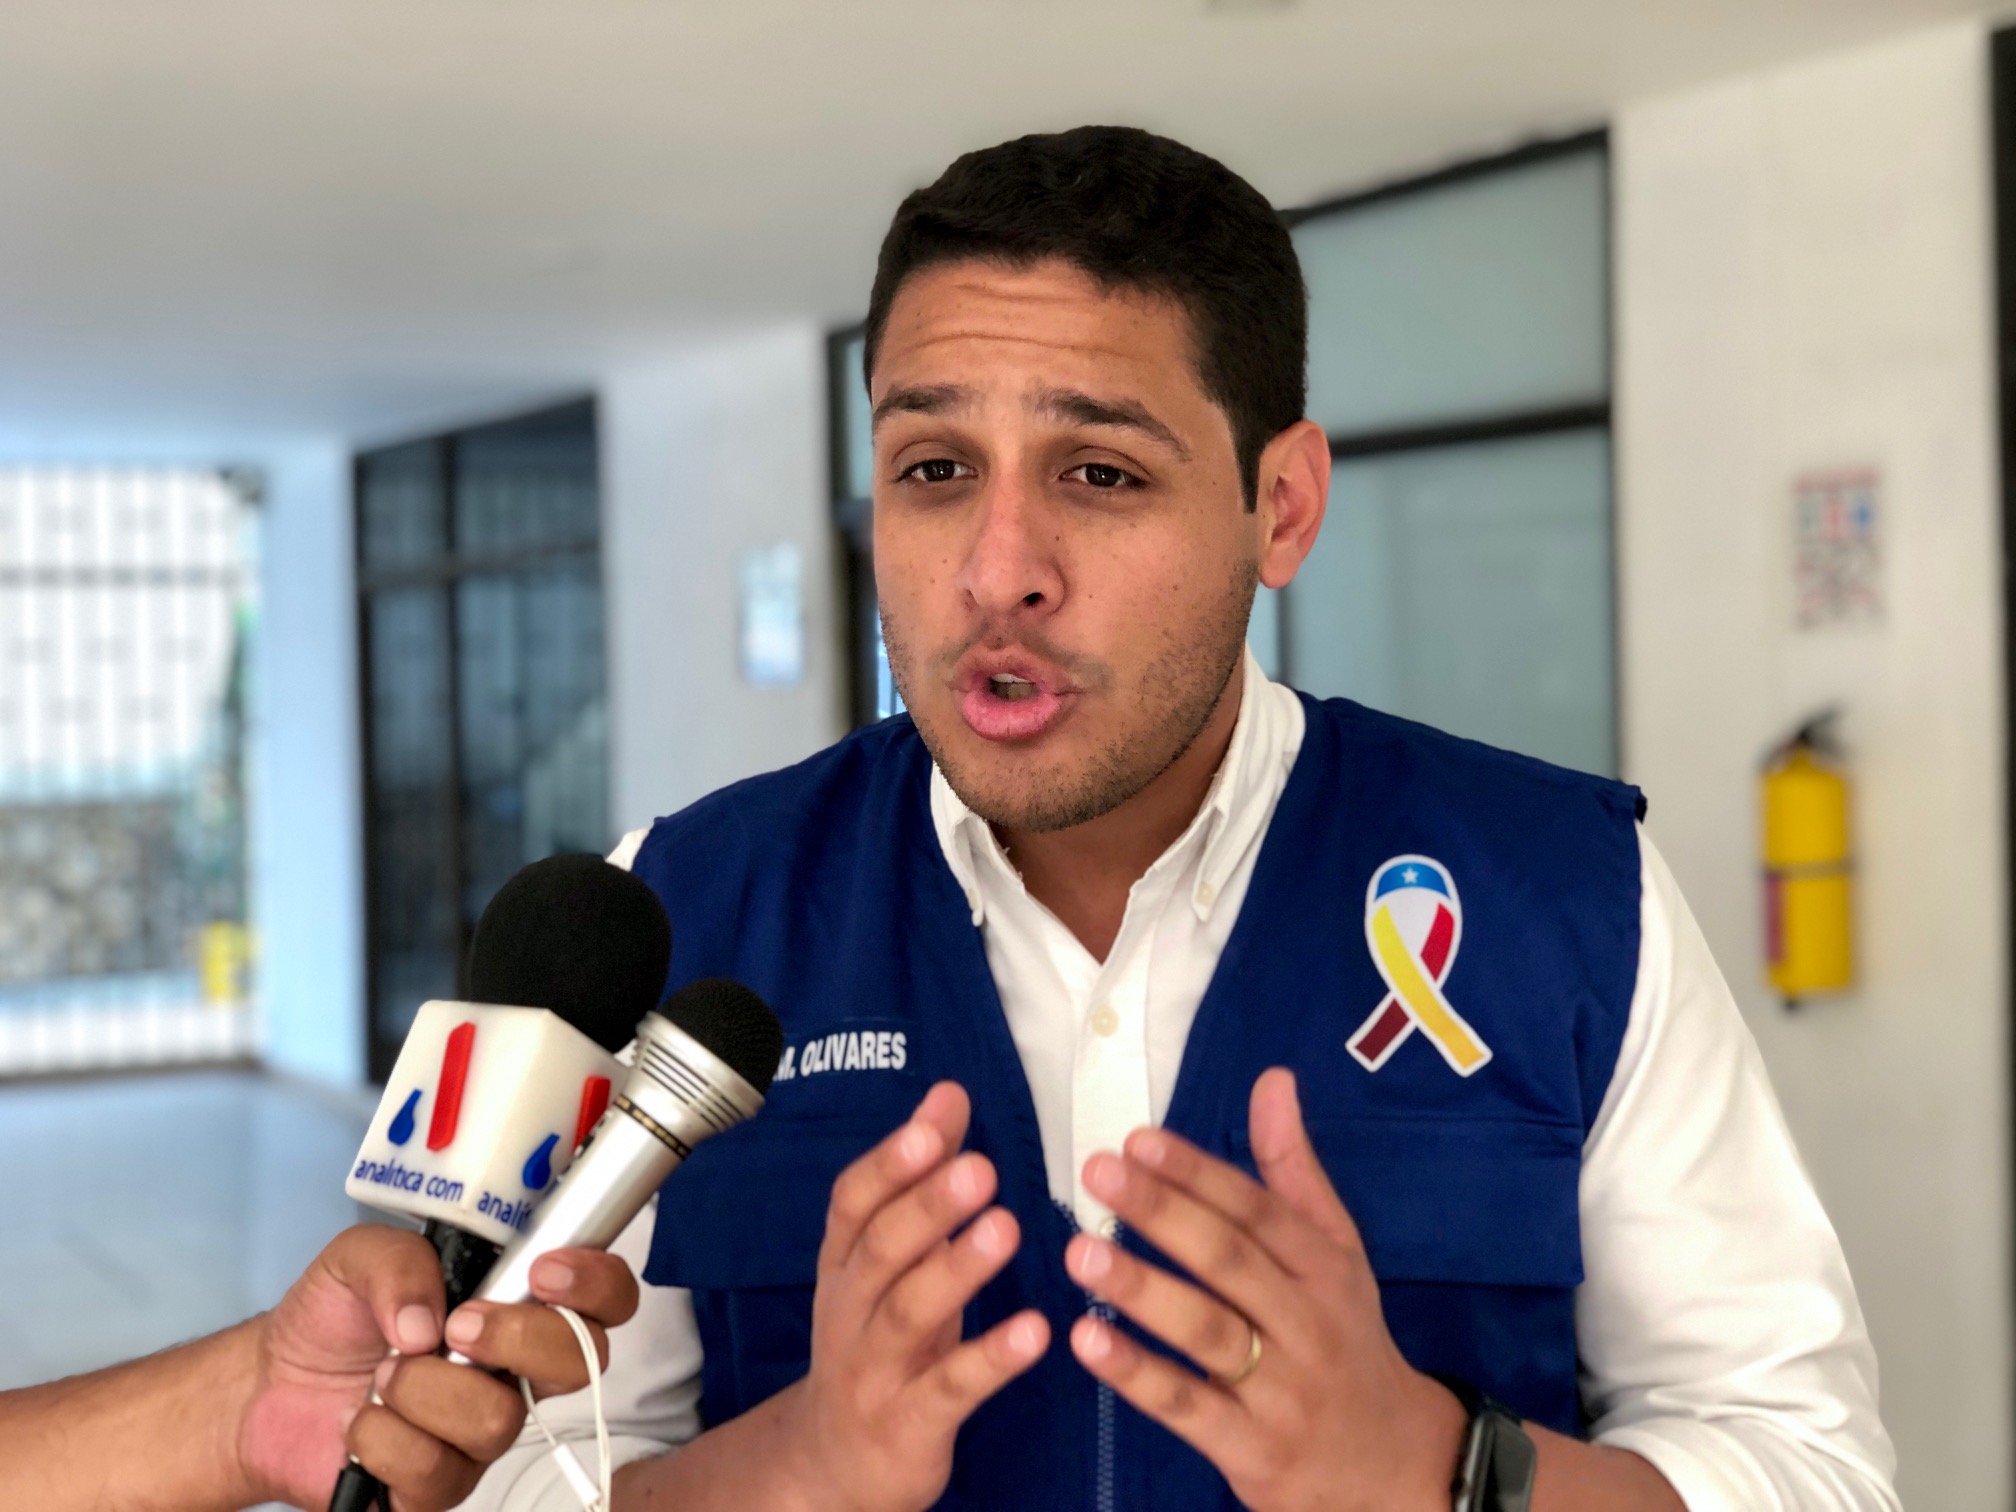 El mensaje de José Manuel Olivares sobre el presunto escándalo de corrupción en Cúcuta